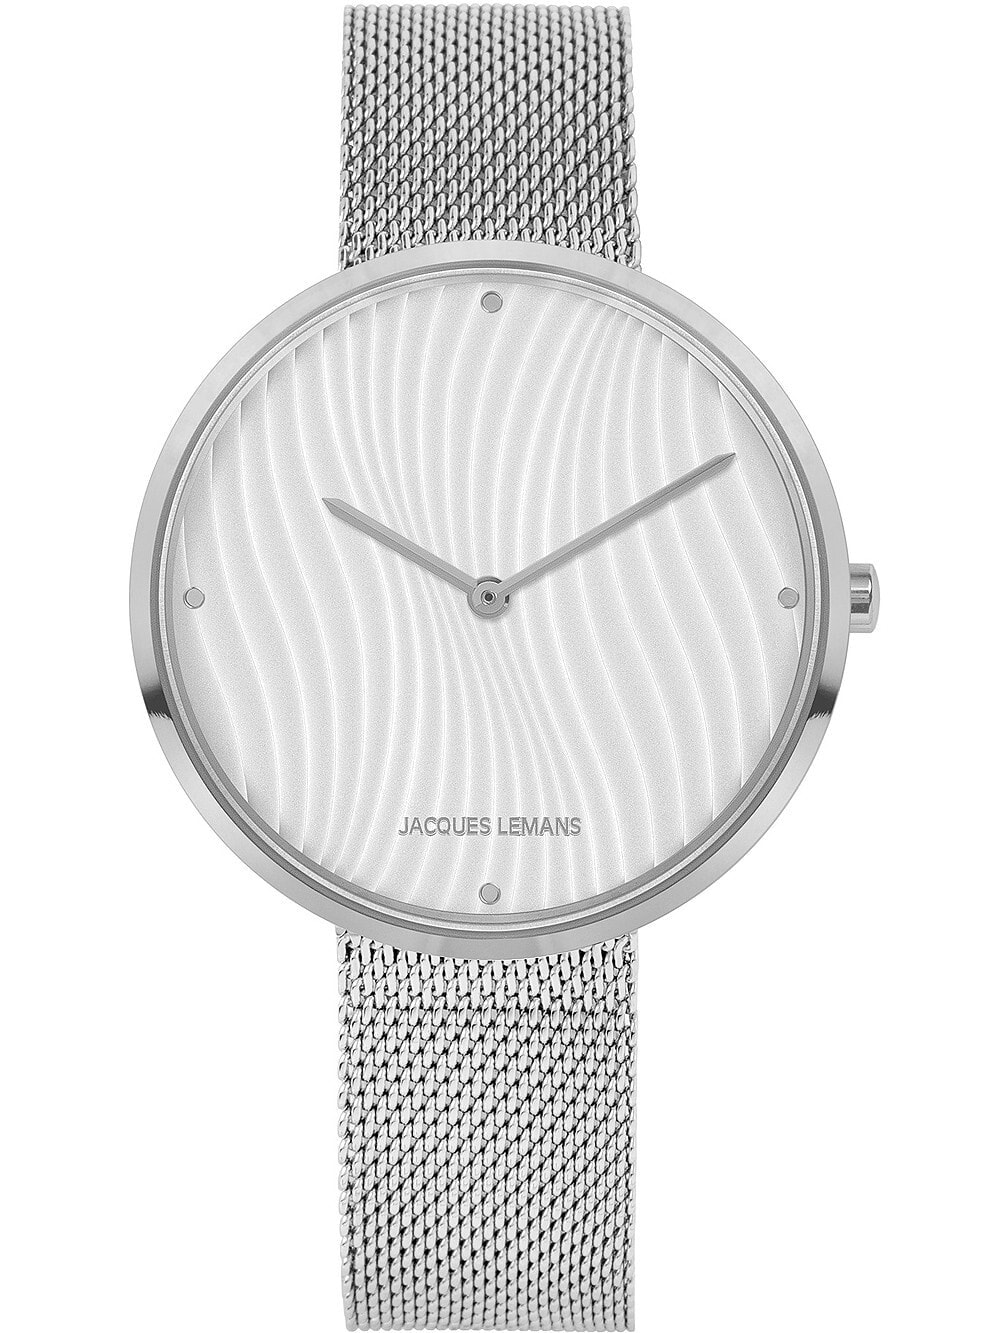 Женские наручные кварцевые часы Jacques Lemans стальной браслет миланского плетения,  специальная плавающая застежка позволяет самостоятельно регулировать длину браслета.